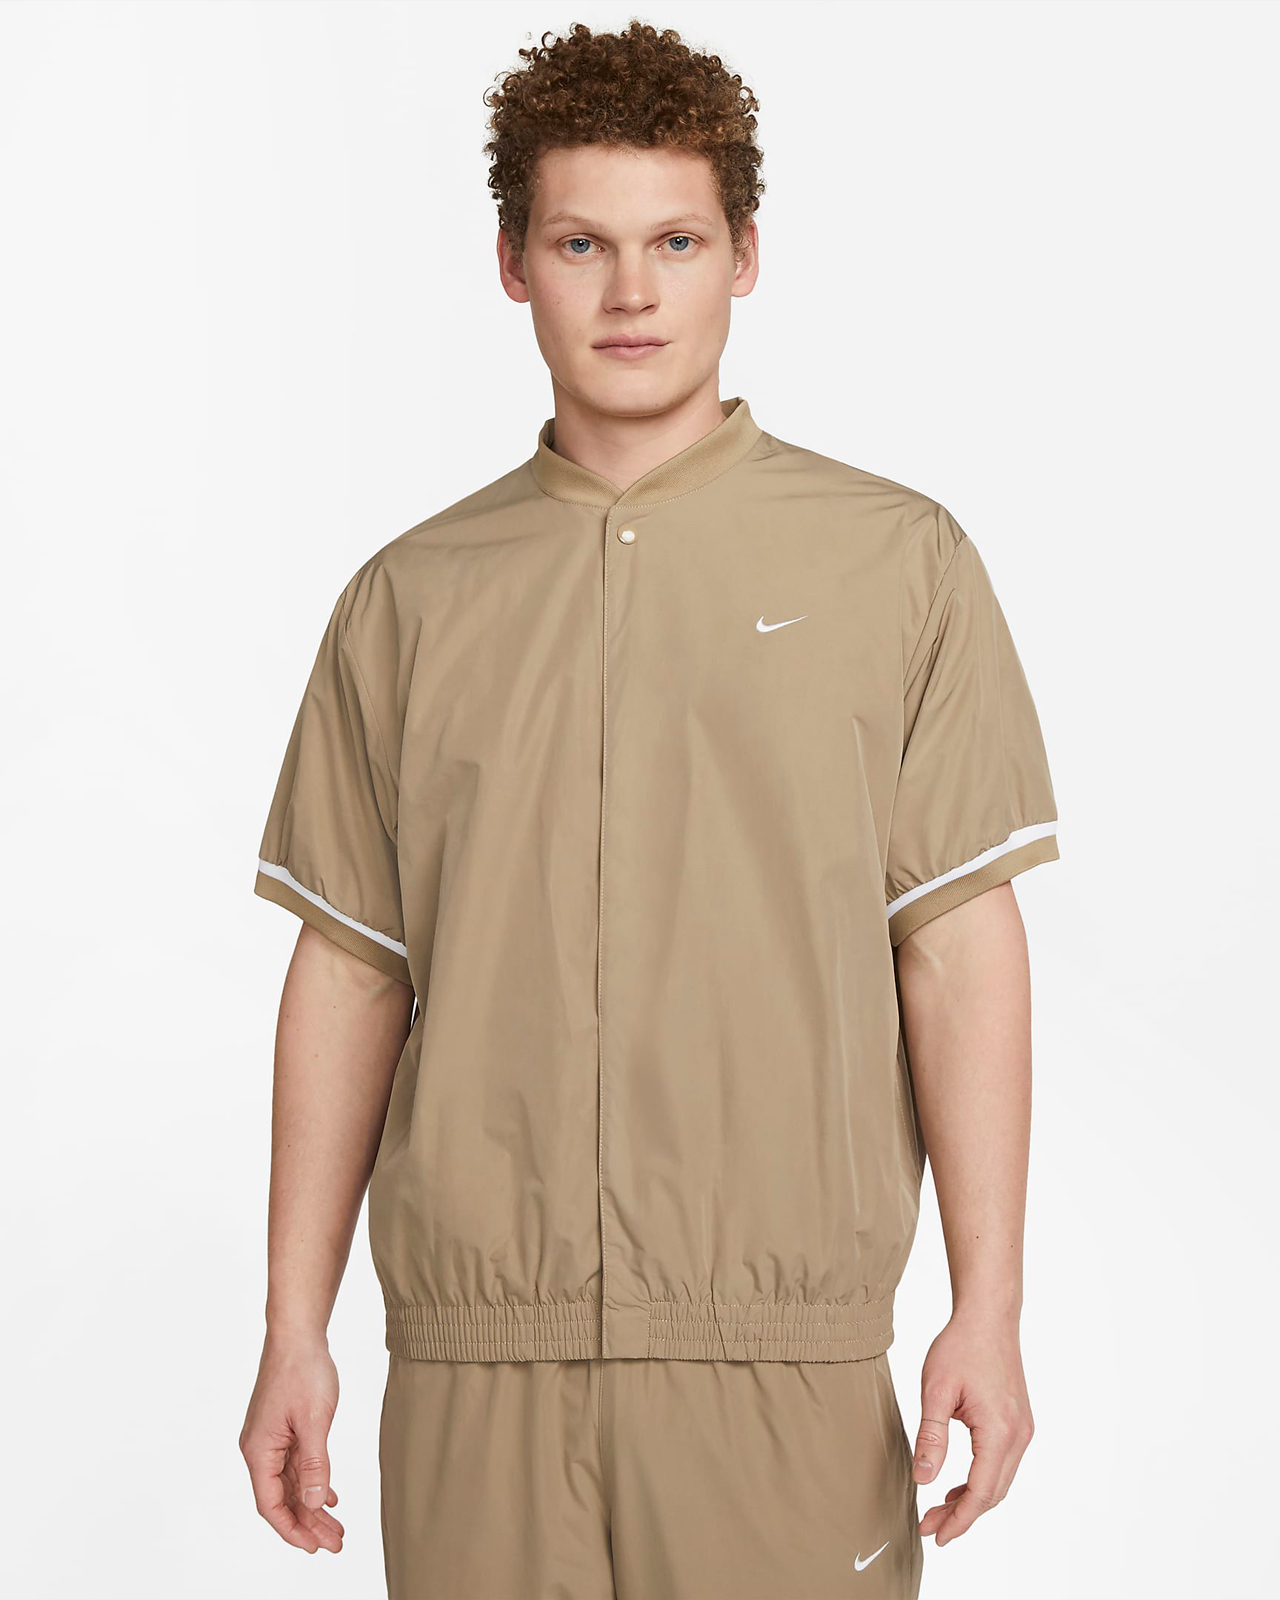 Nike-Authentics-Warm-Up-Shirt-Khaki